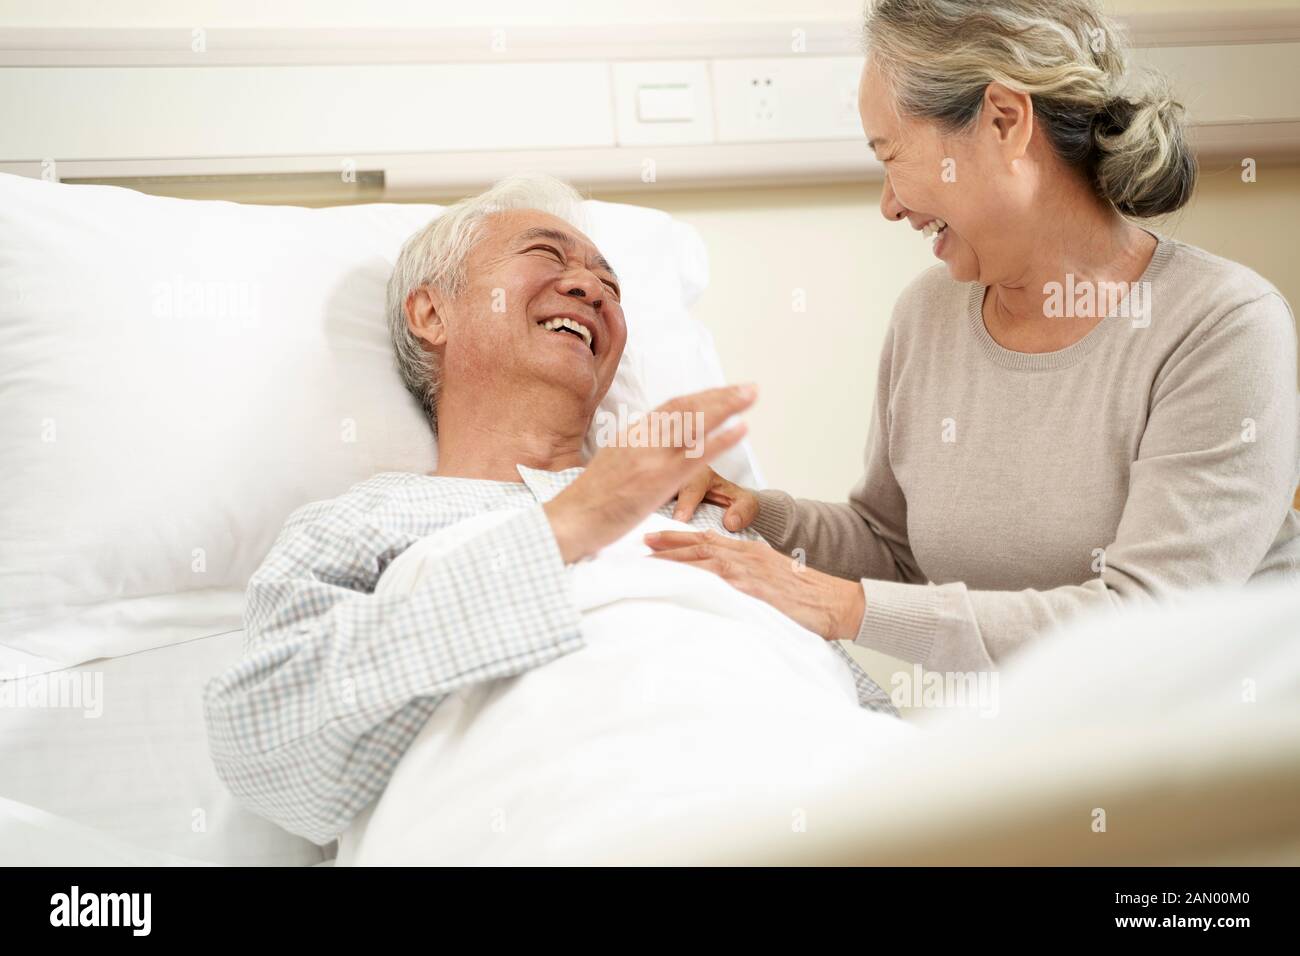 une femme asiatique âgée affectueuse et bienveillante visite et parle au mari hospitalisé au chevet du patient Banque D'Images